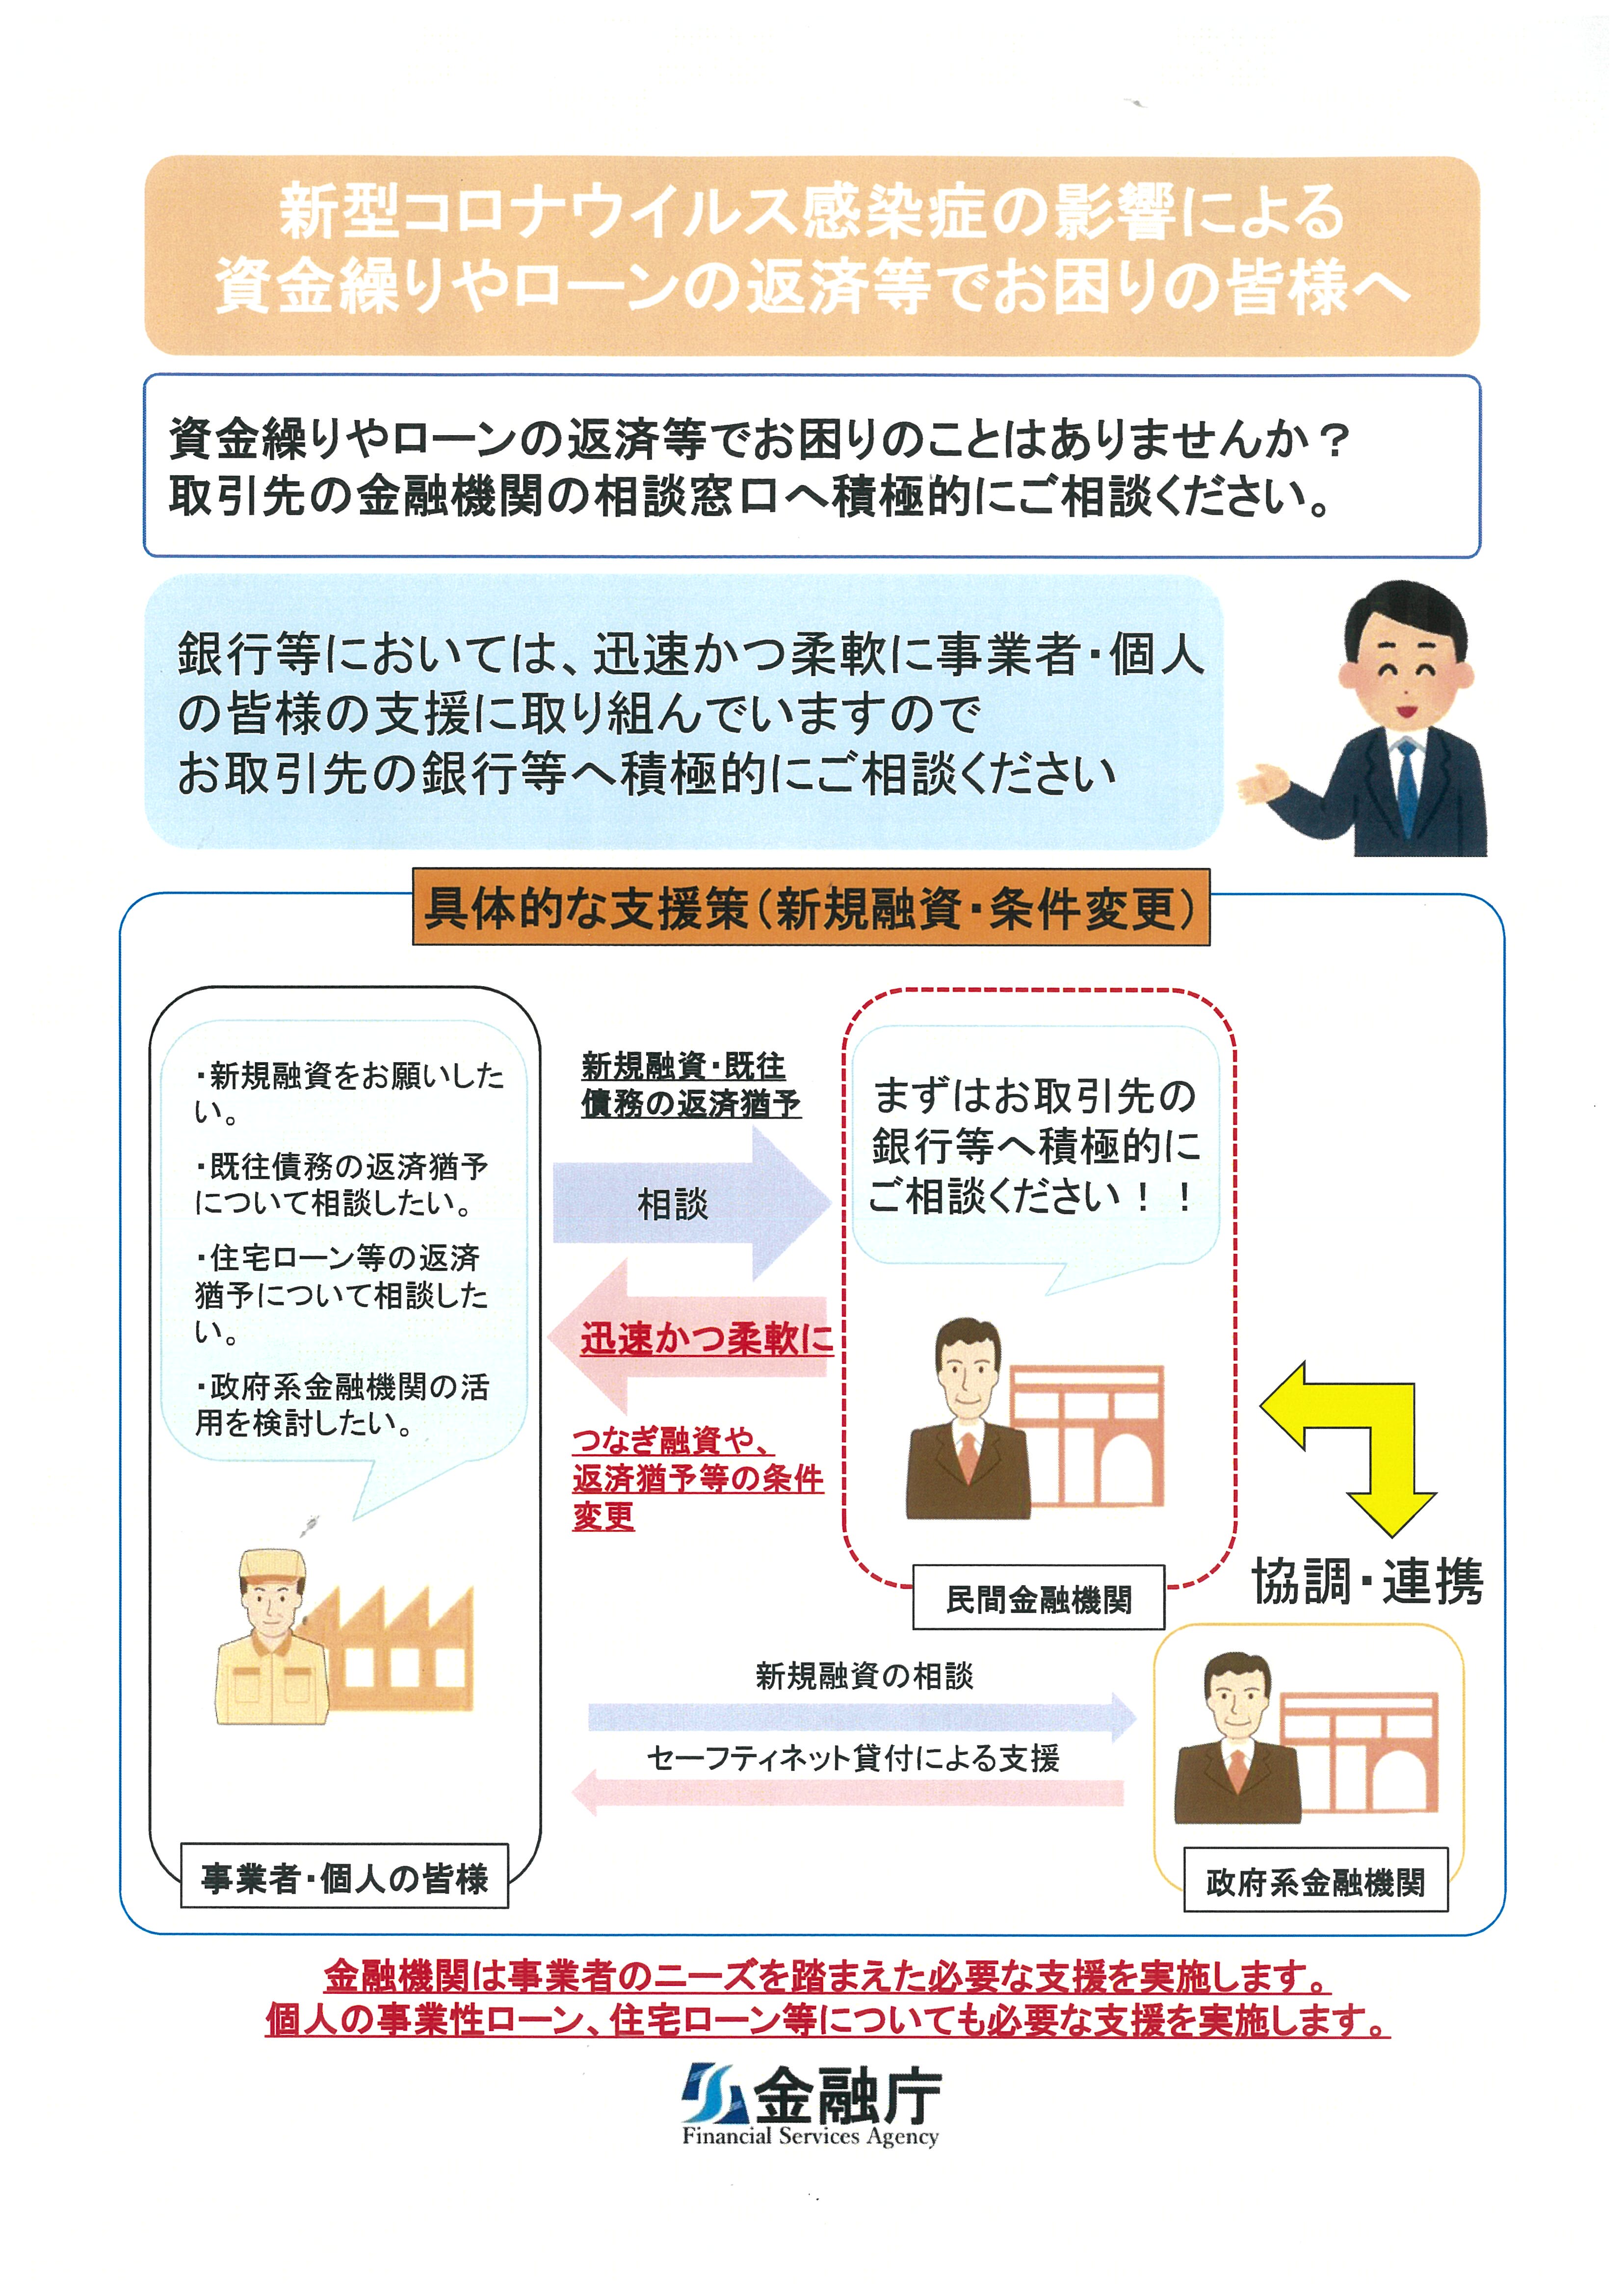 金融庁の新型コロナ関連情報(資金繰り･ローン返済等)